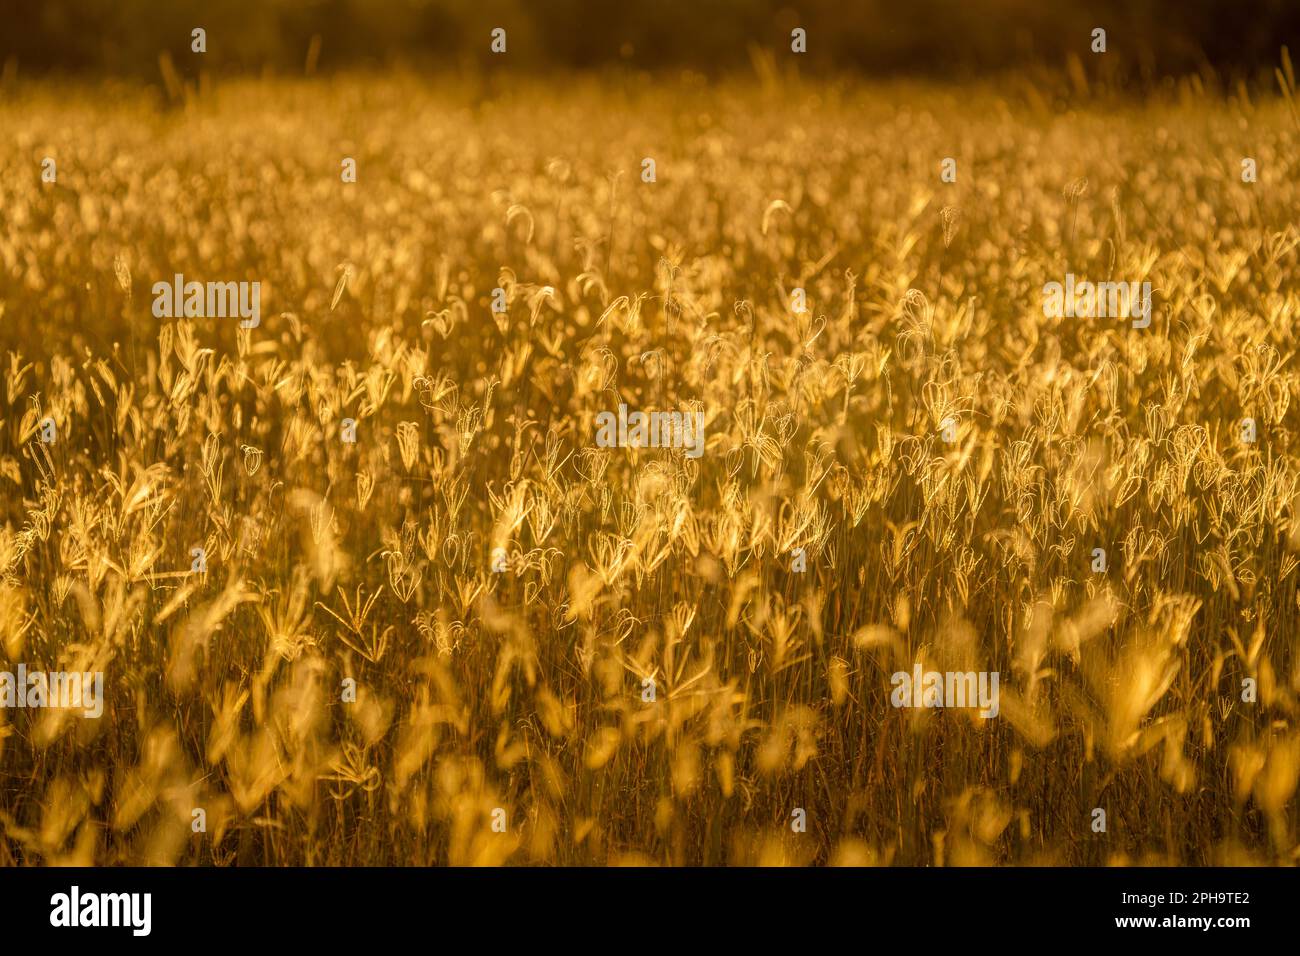 Gros plan, détails des lames d'herbe en lumière dorée. Rétroéclairage du coucher de soleil africain. Texture des motifs abstraits. Parc national de Hwange, Zimbabwe Banque D'Images